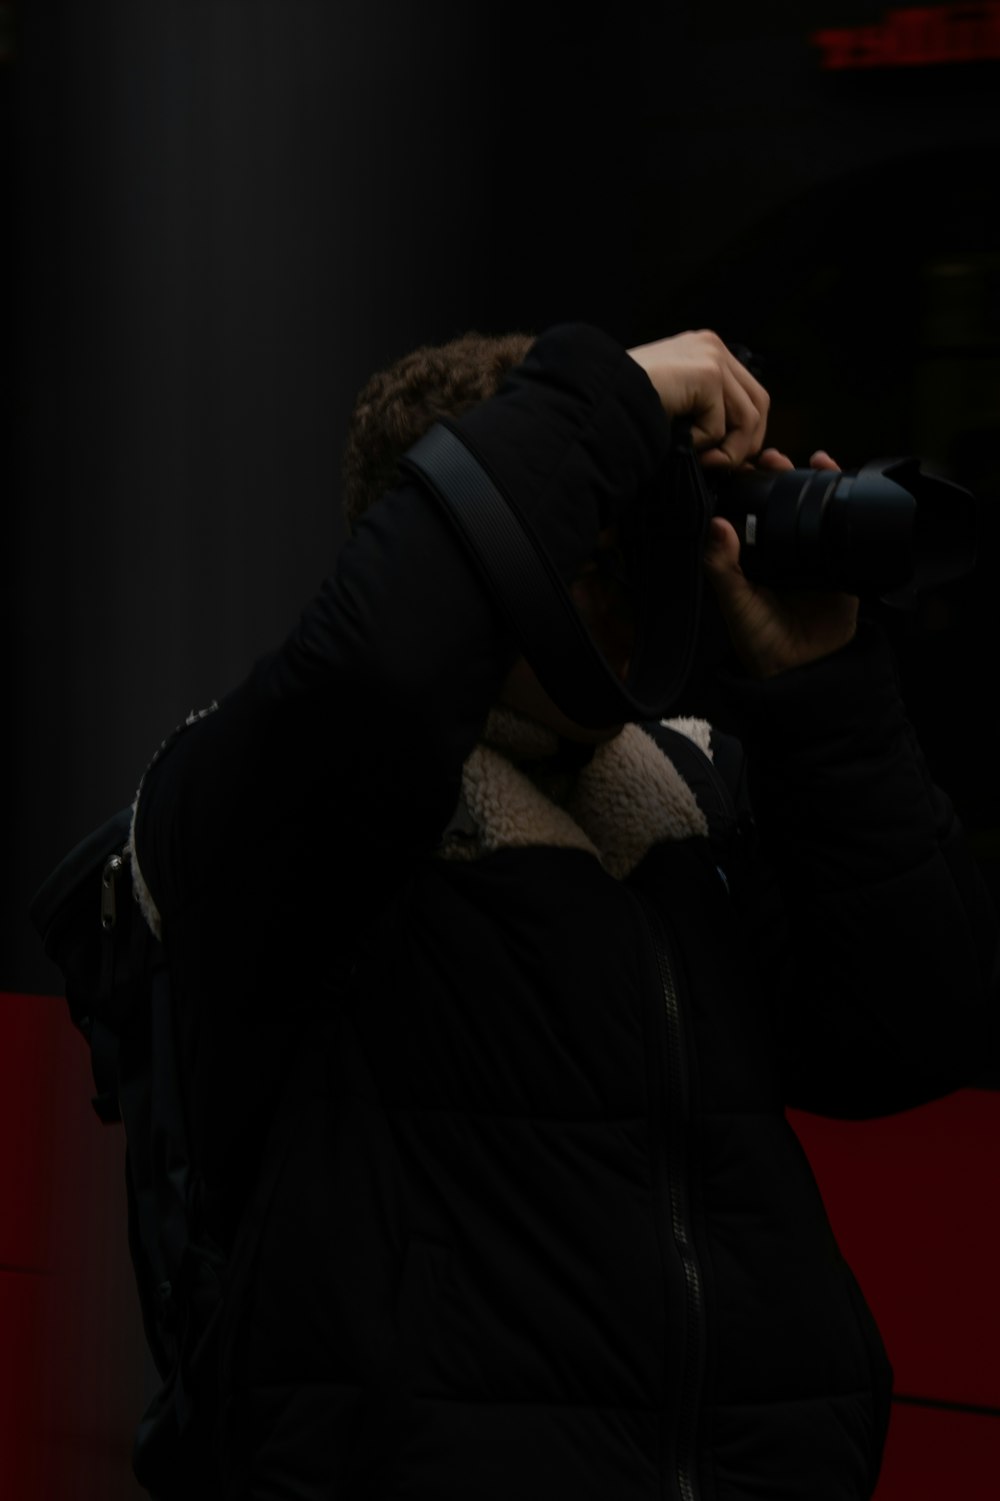 homme en veste noire tenant un appareil photo reflex numérique noir